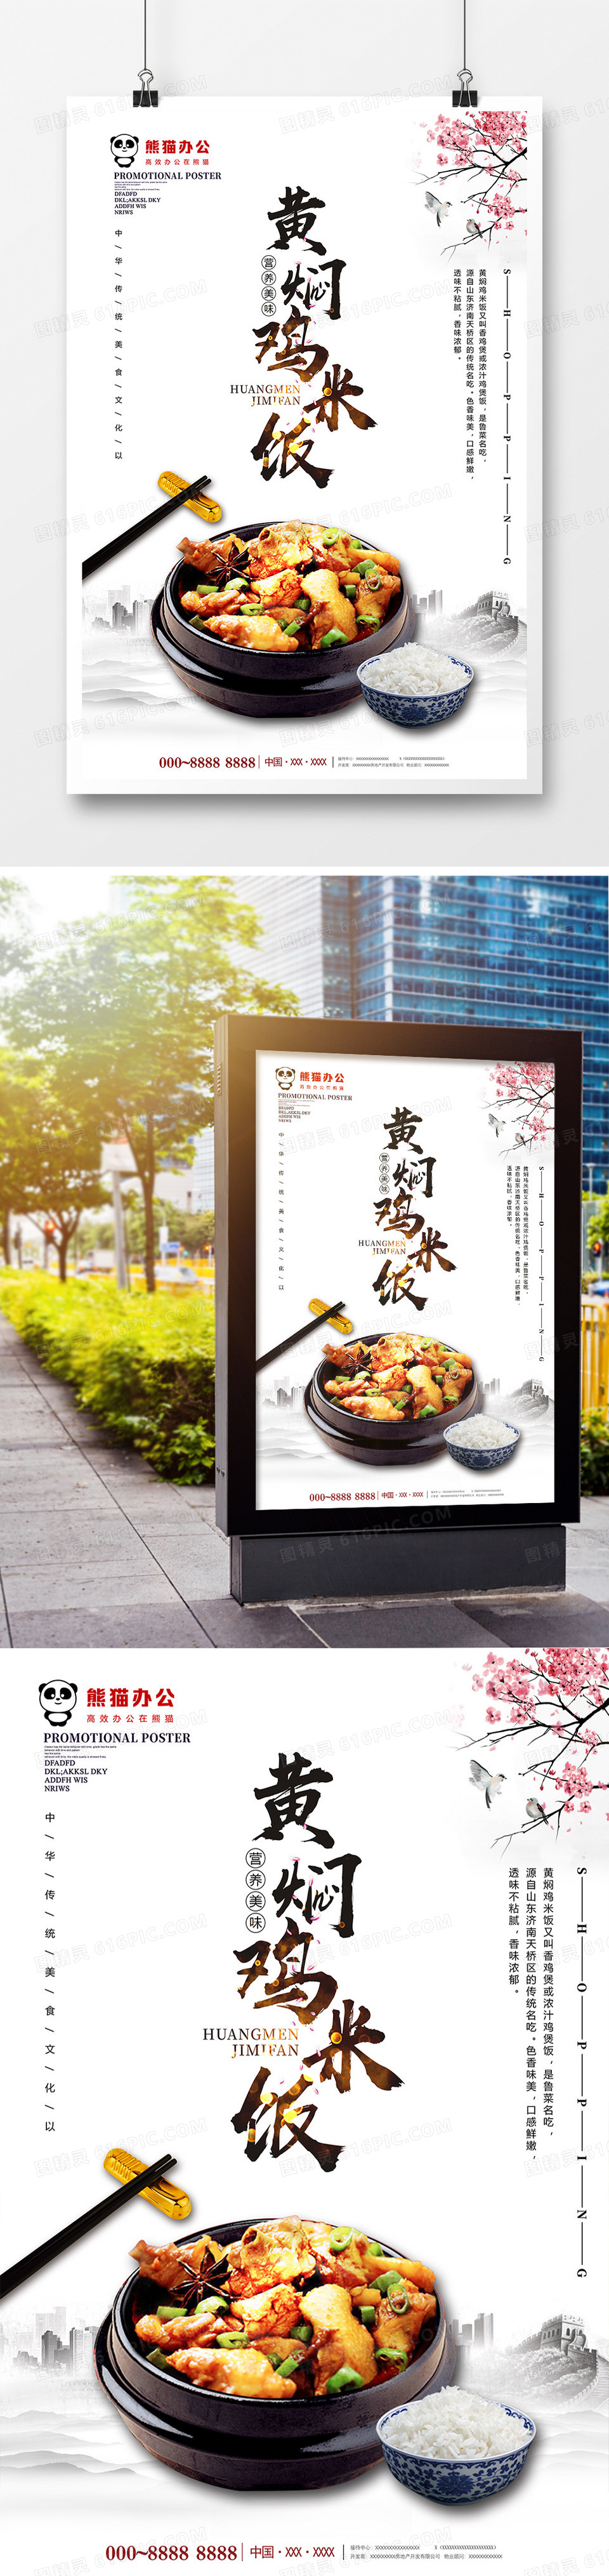 唯美大气黄焖鸡米饭美食海报设计